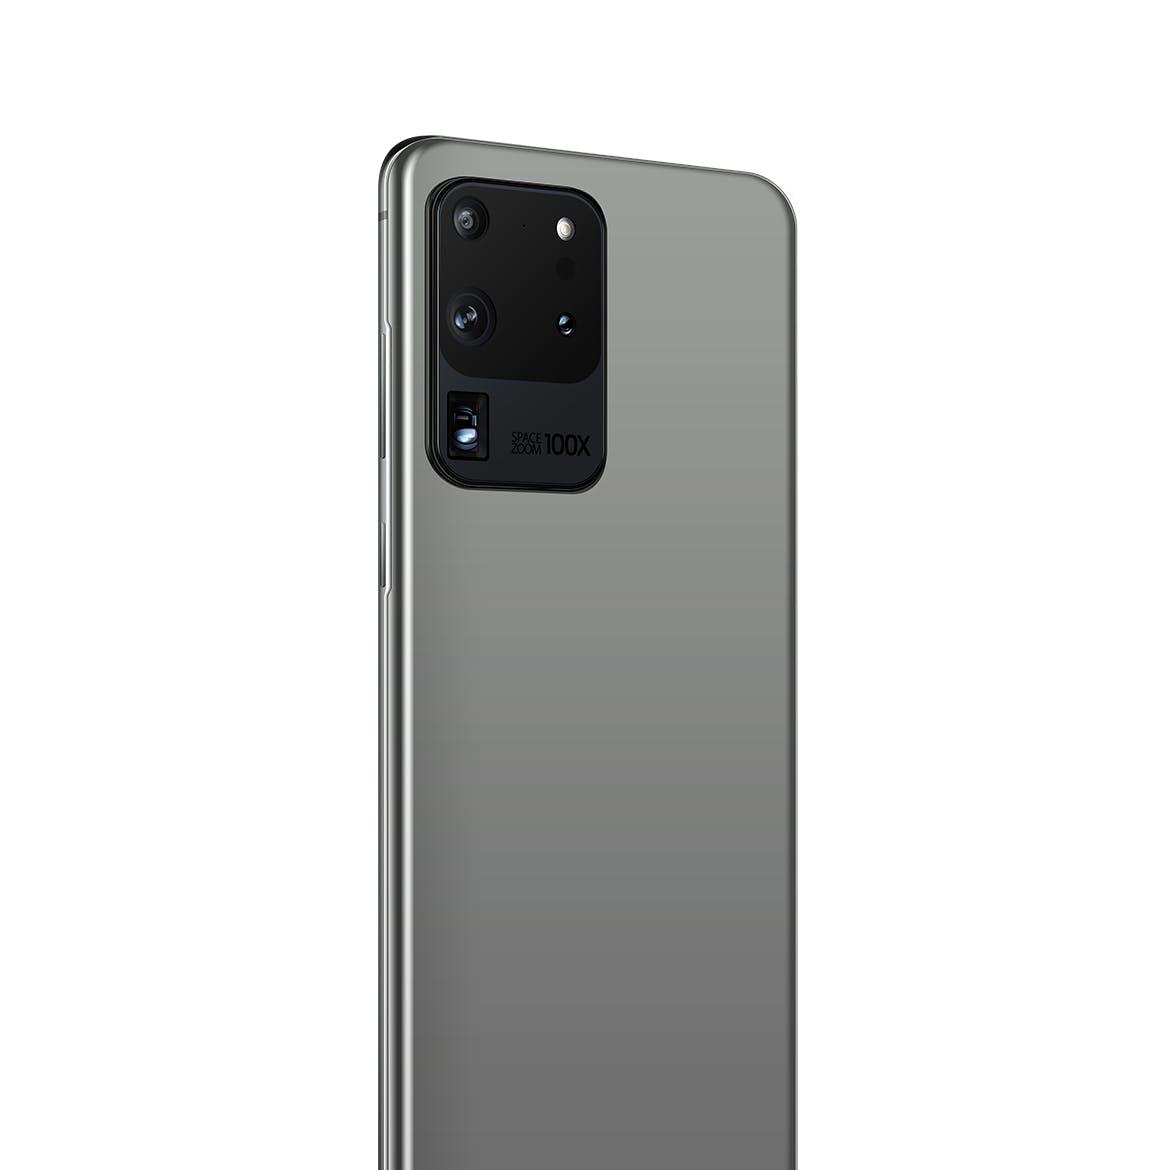 三星Galaxy S20 Ultra智能手机UI设计屏幕预览第一素材精选样机 S20 Ultra Layered PSD Mockups插图(4)